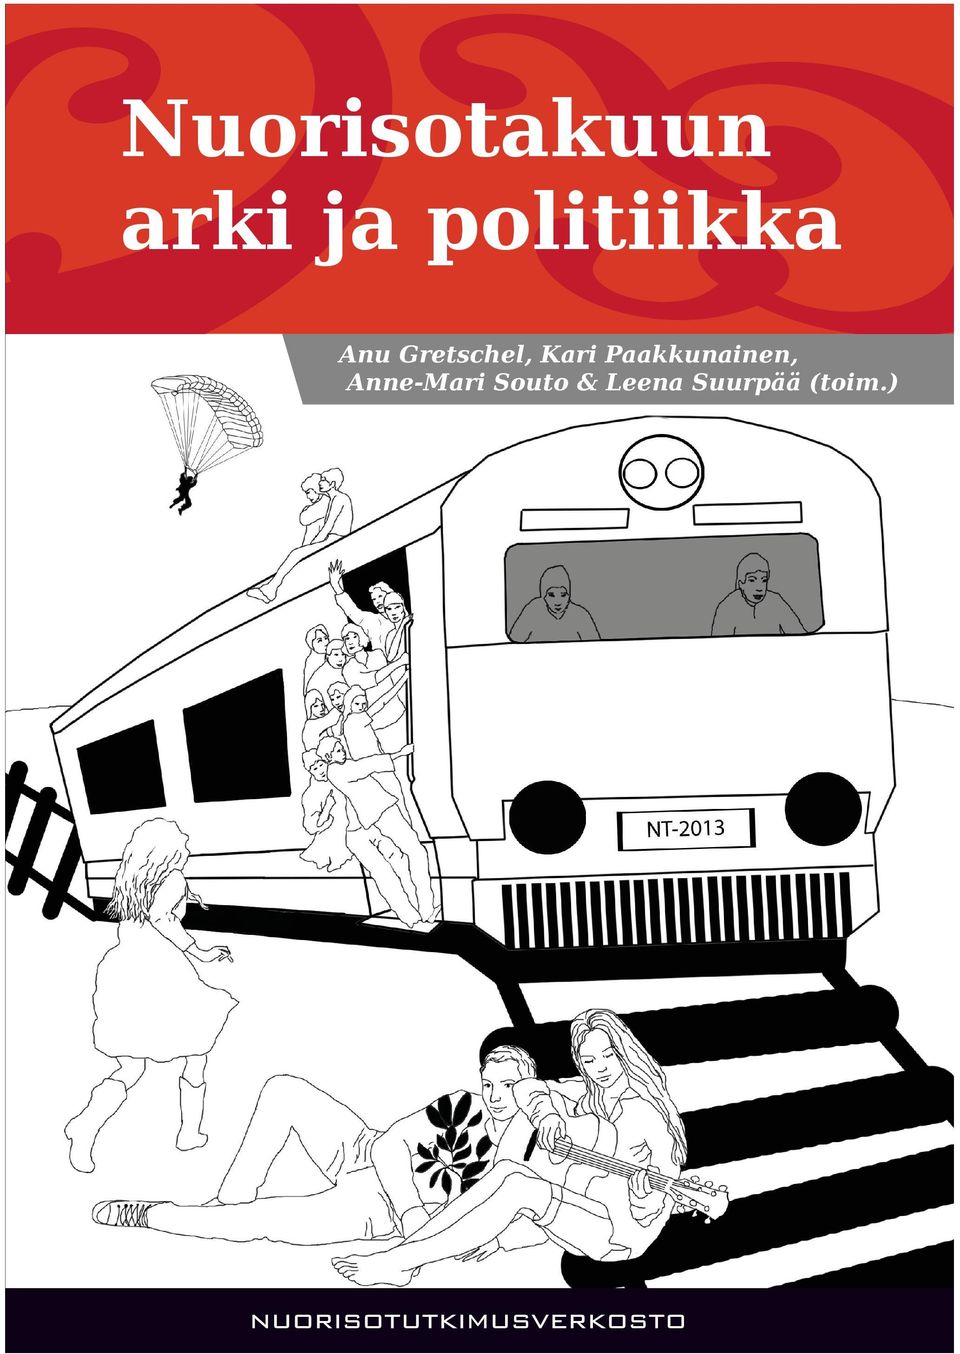 Kirja toimii kaleidoskooppina paitsi nuorisotakuun arkeen ja politiikkaan, myös yleisesti suomalaiseen nuorisopolitiikkaan.